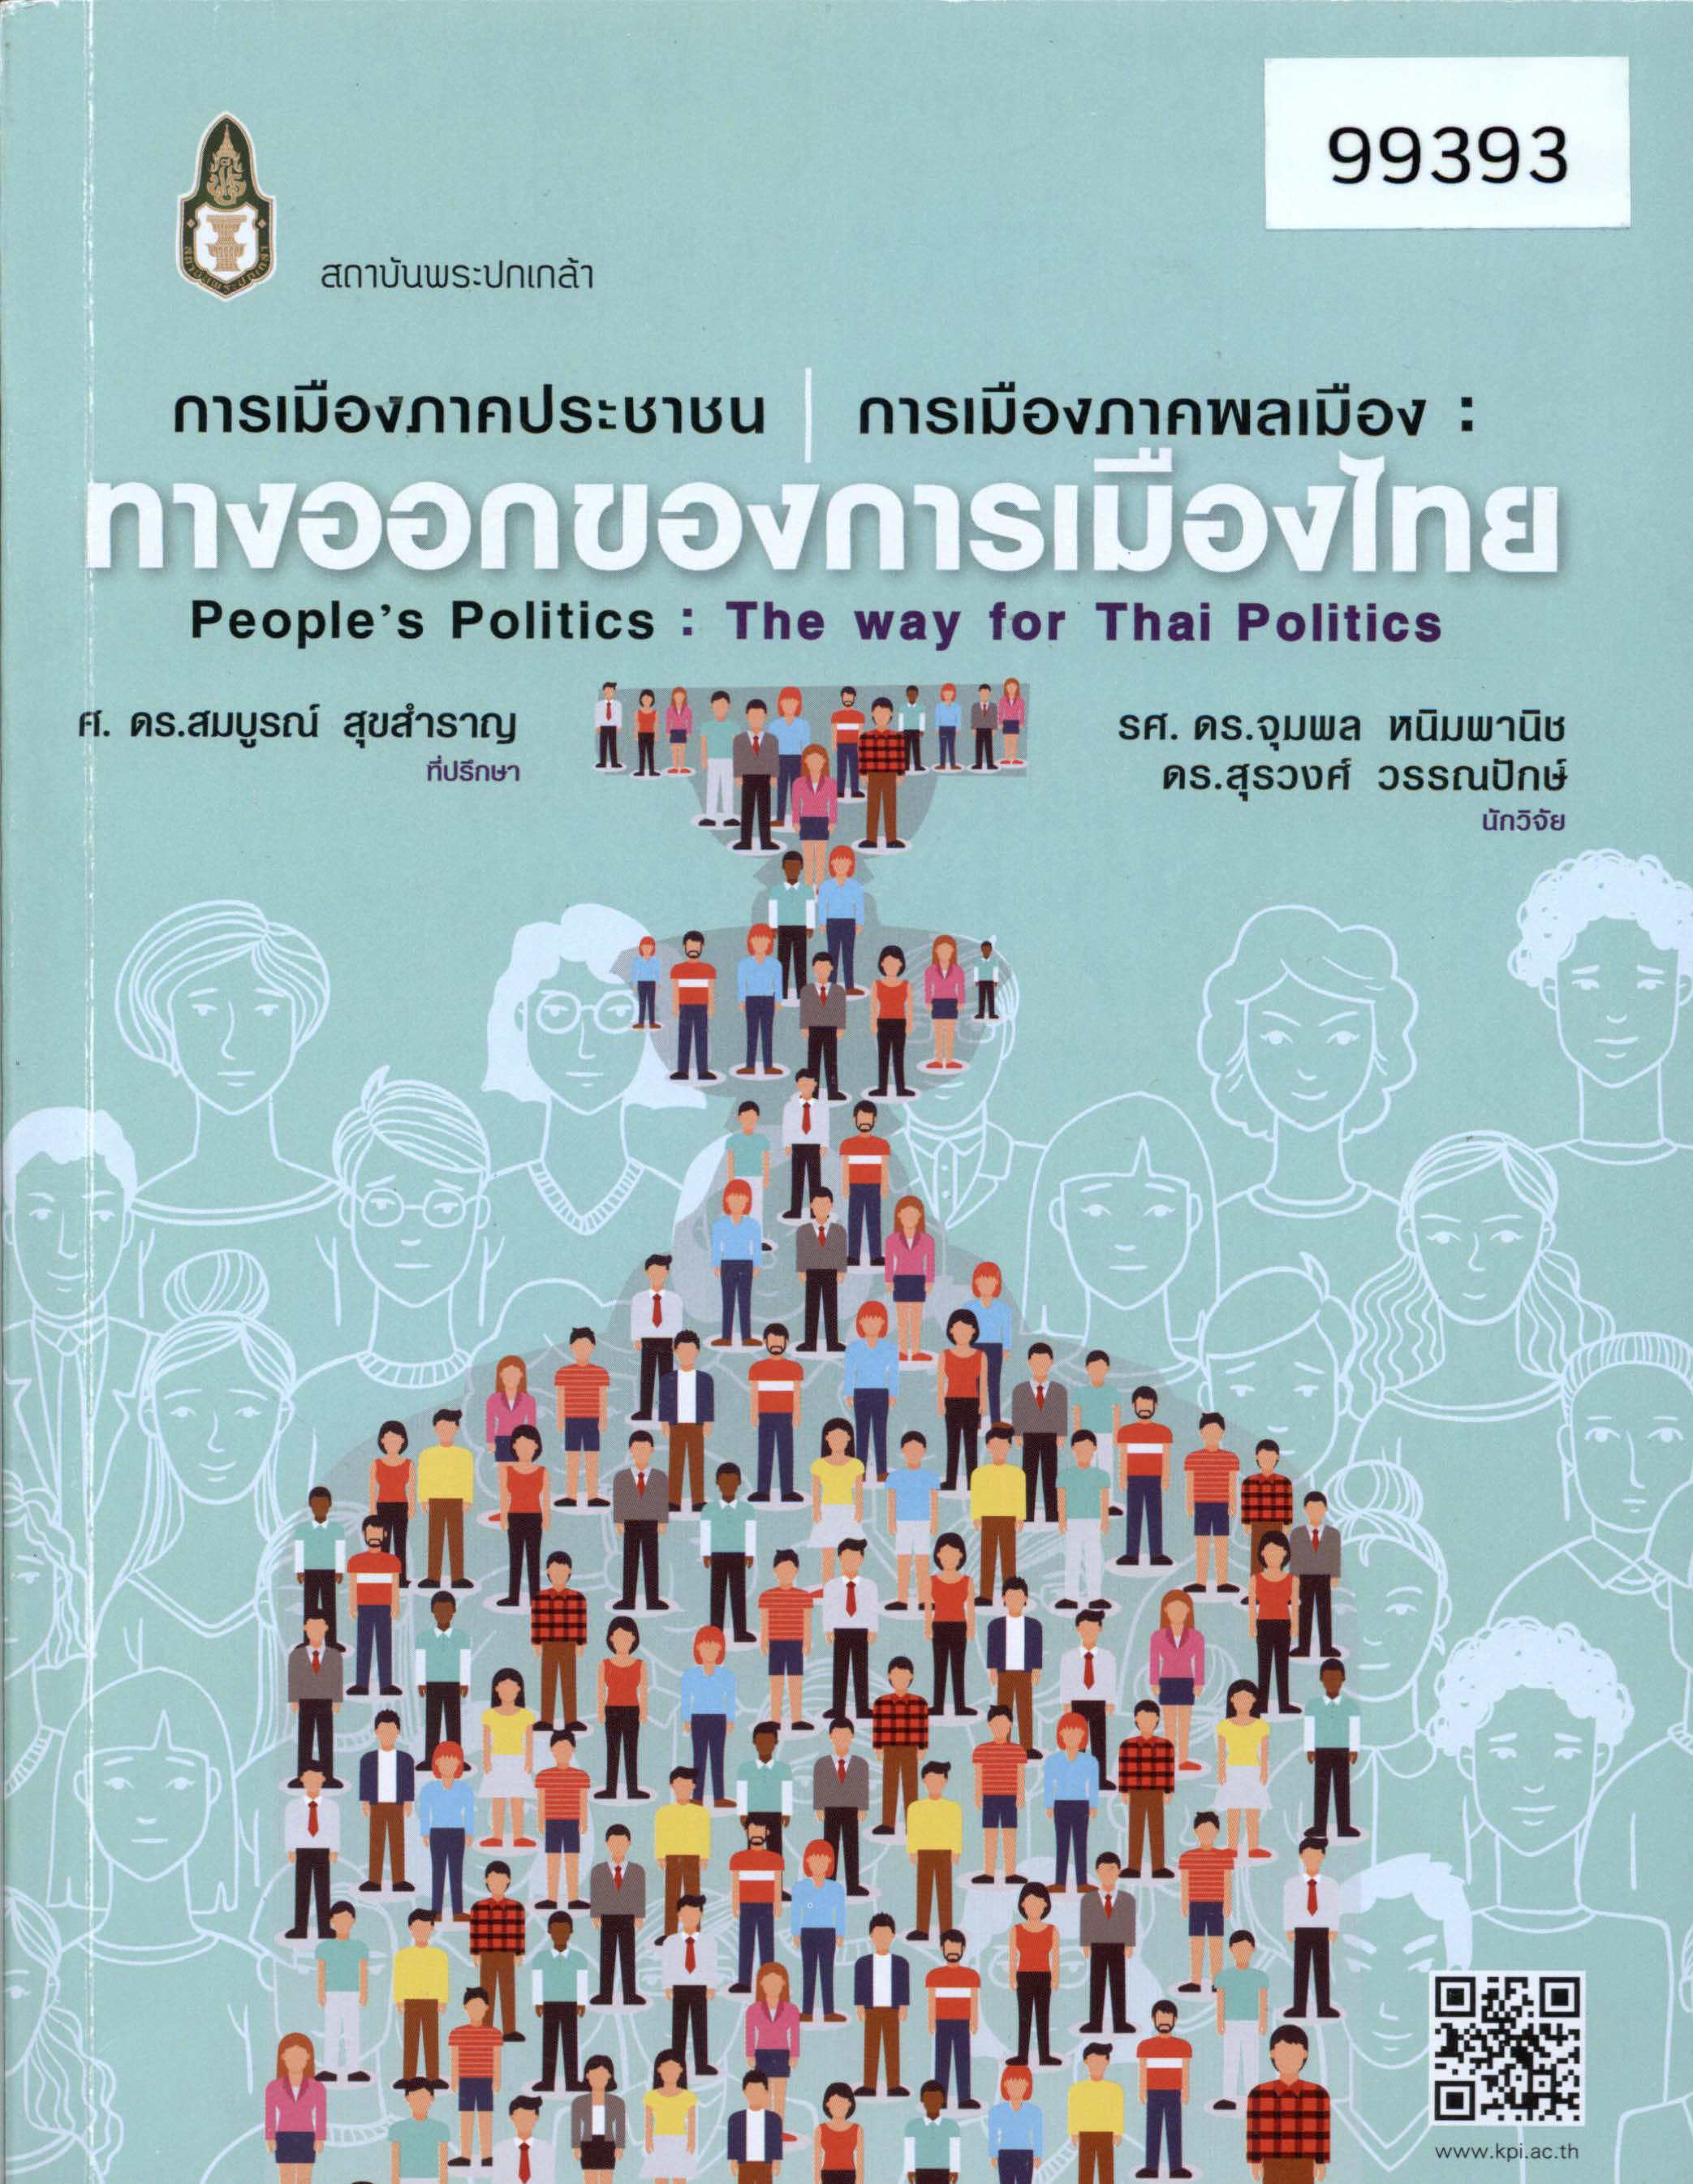 การเมืองภาคประชาชน/การเมืองภาคพลเมือง: ทางออกของการเมืองไทย